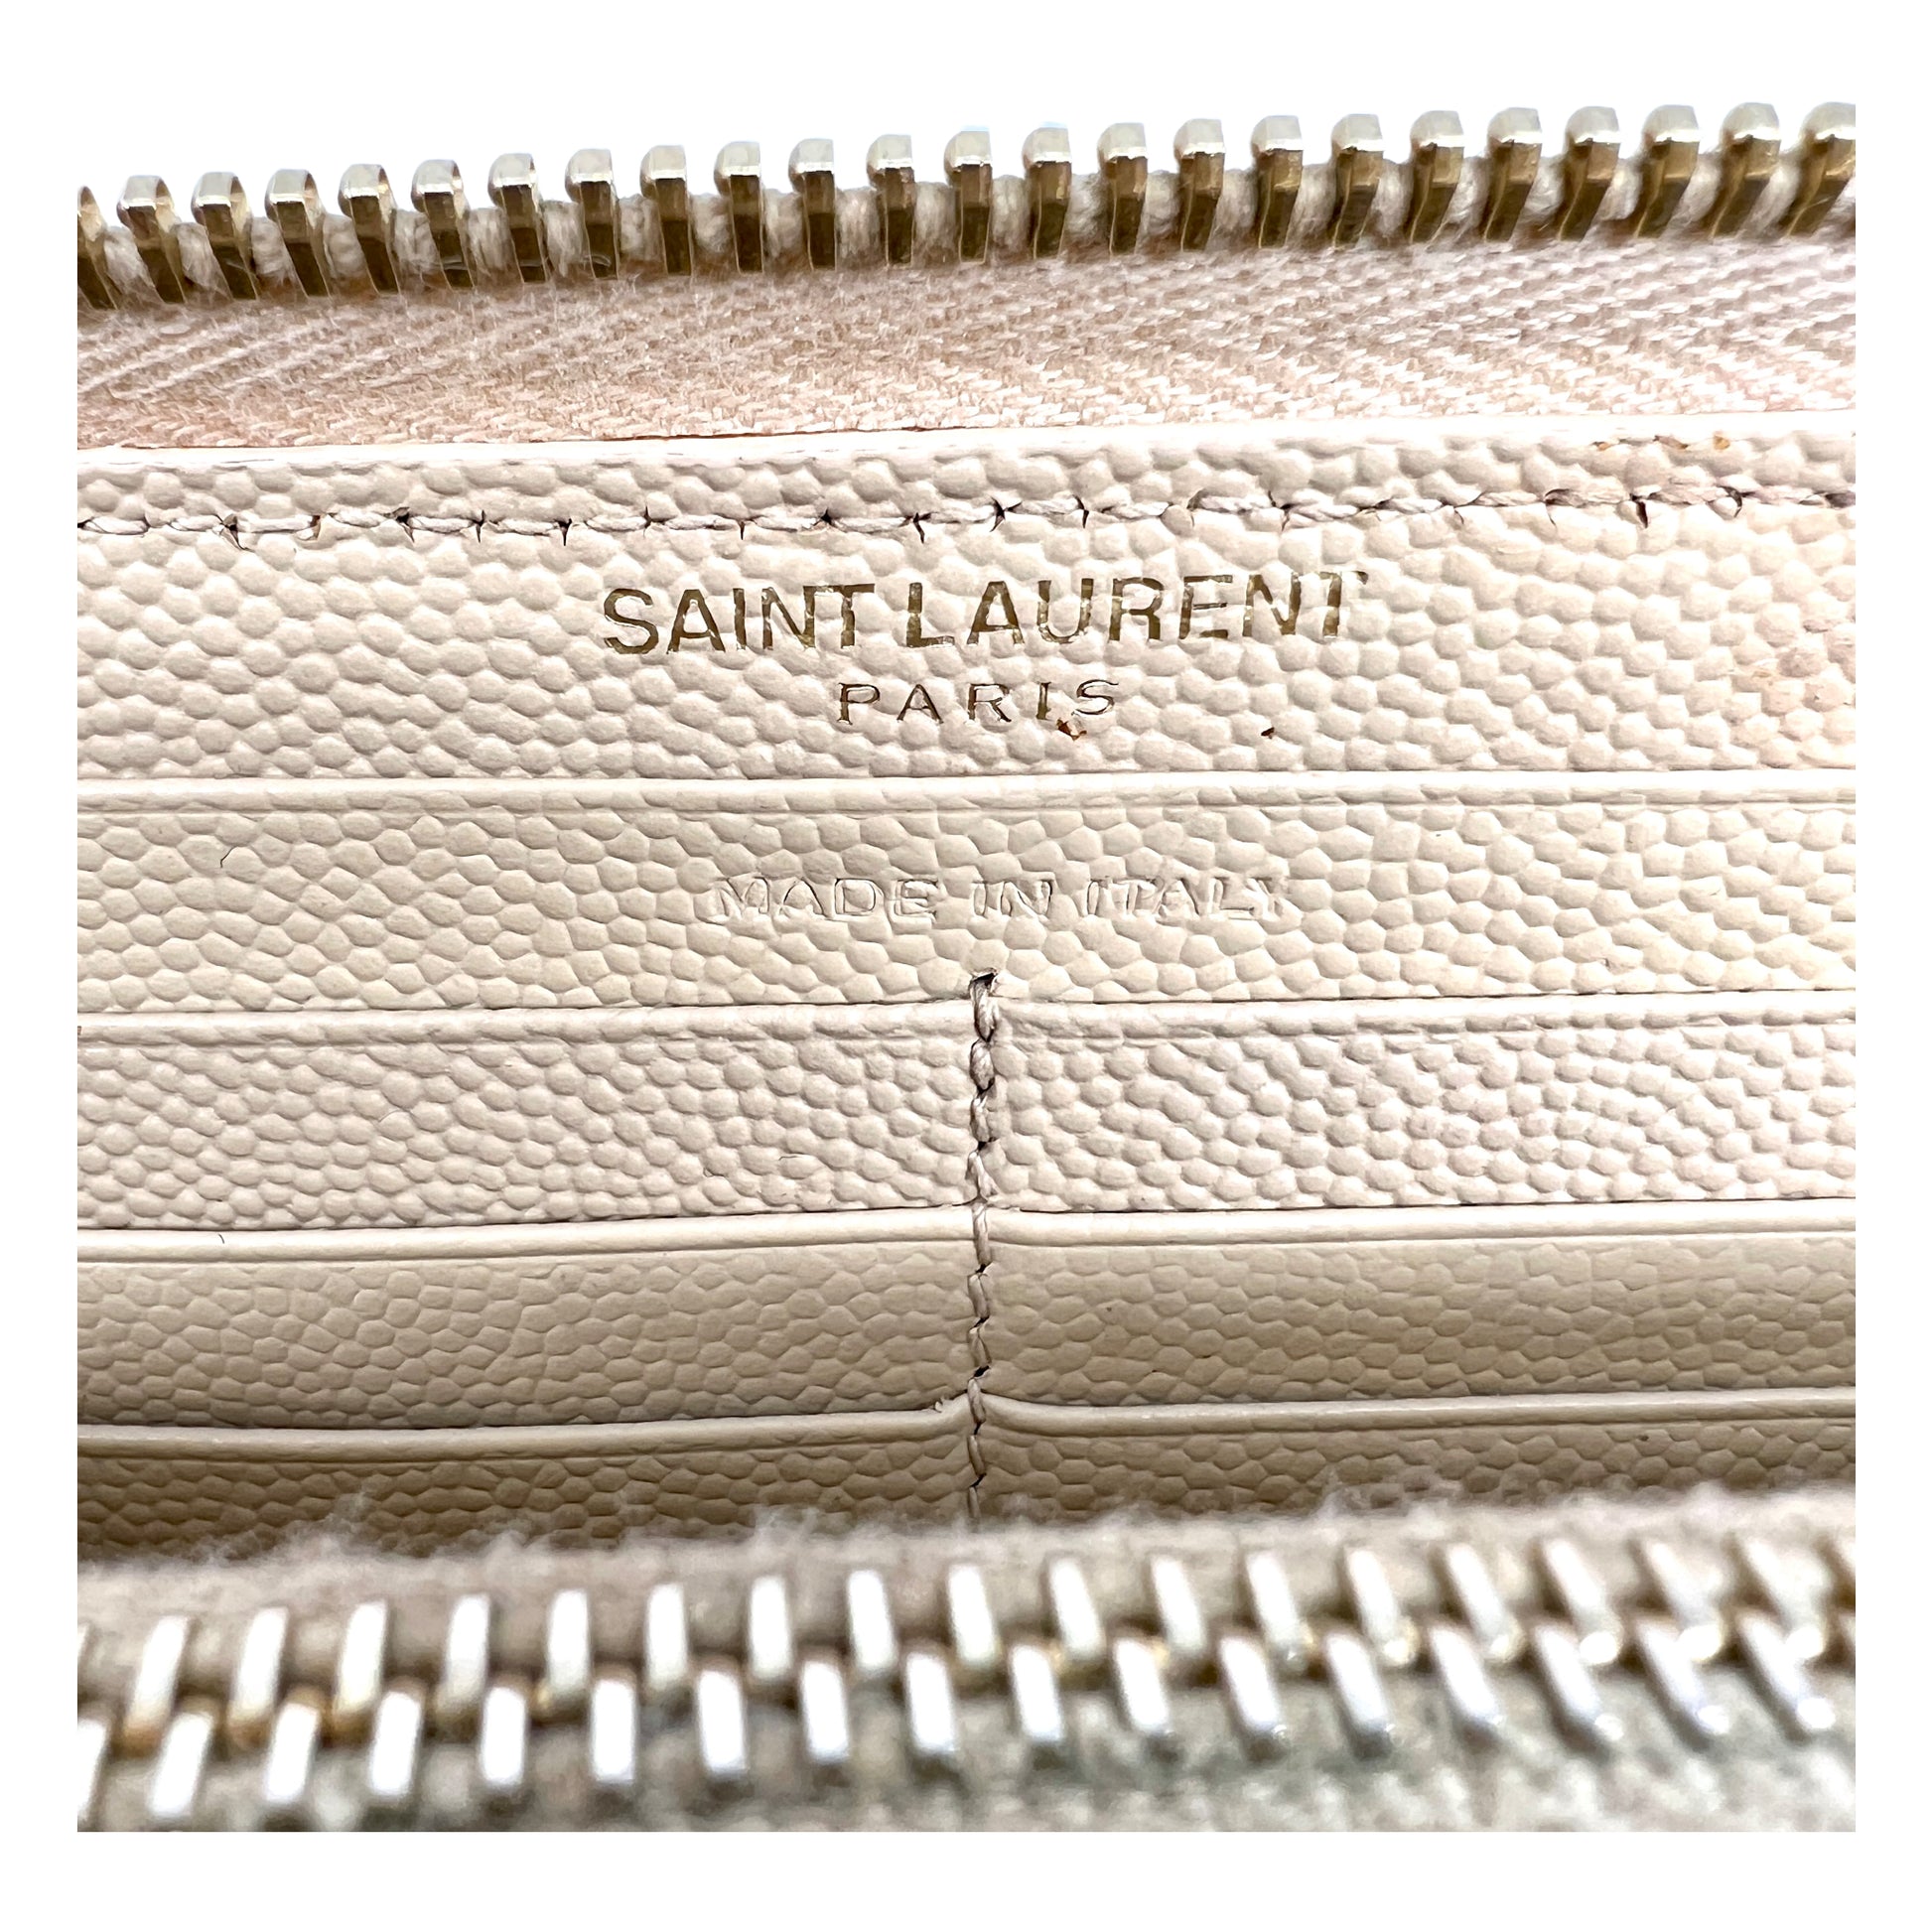 saint laurent paris zip around wallet in grain de poudre embossed leather